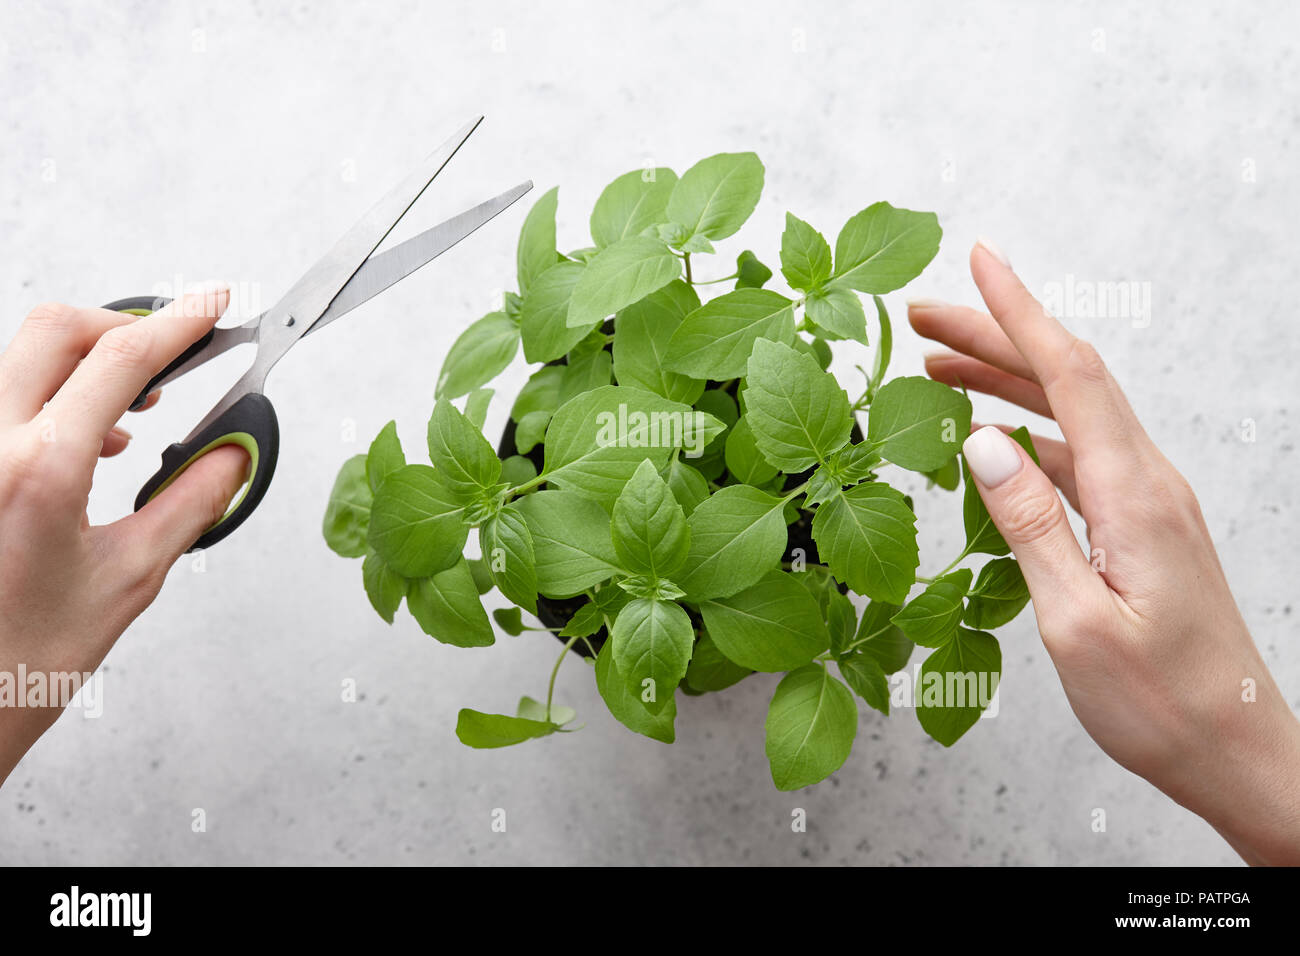 Donna con le mani in mano il taglio fresco verde foglie di basilico Foto Stock